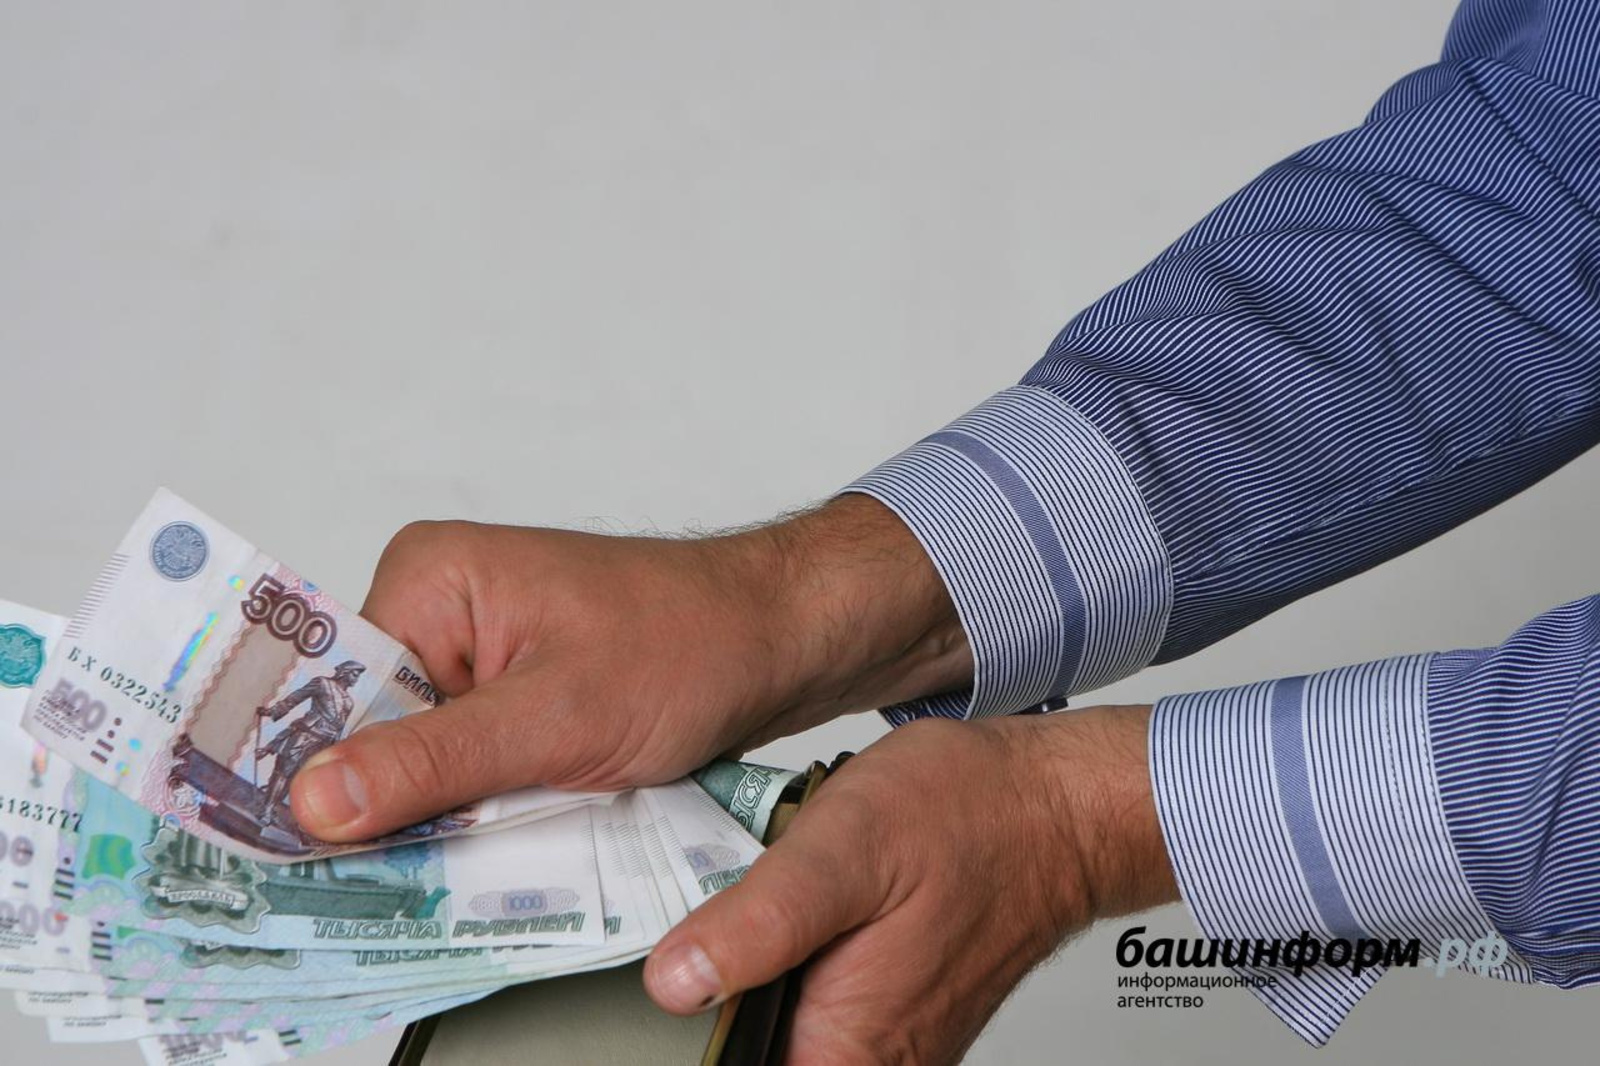 Правительство Башкирии предоставит самозанятым поручительство по кредитам